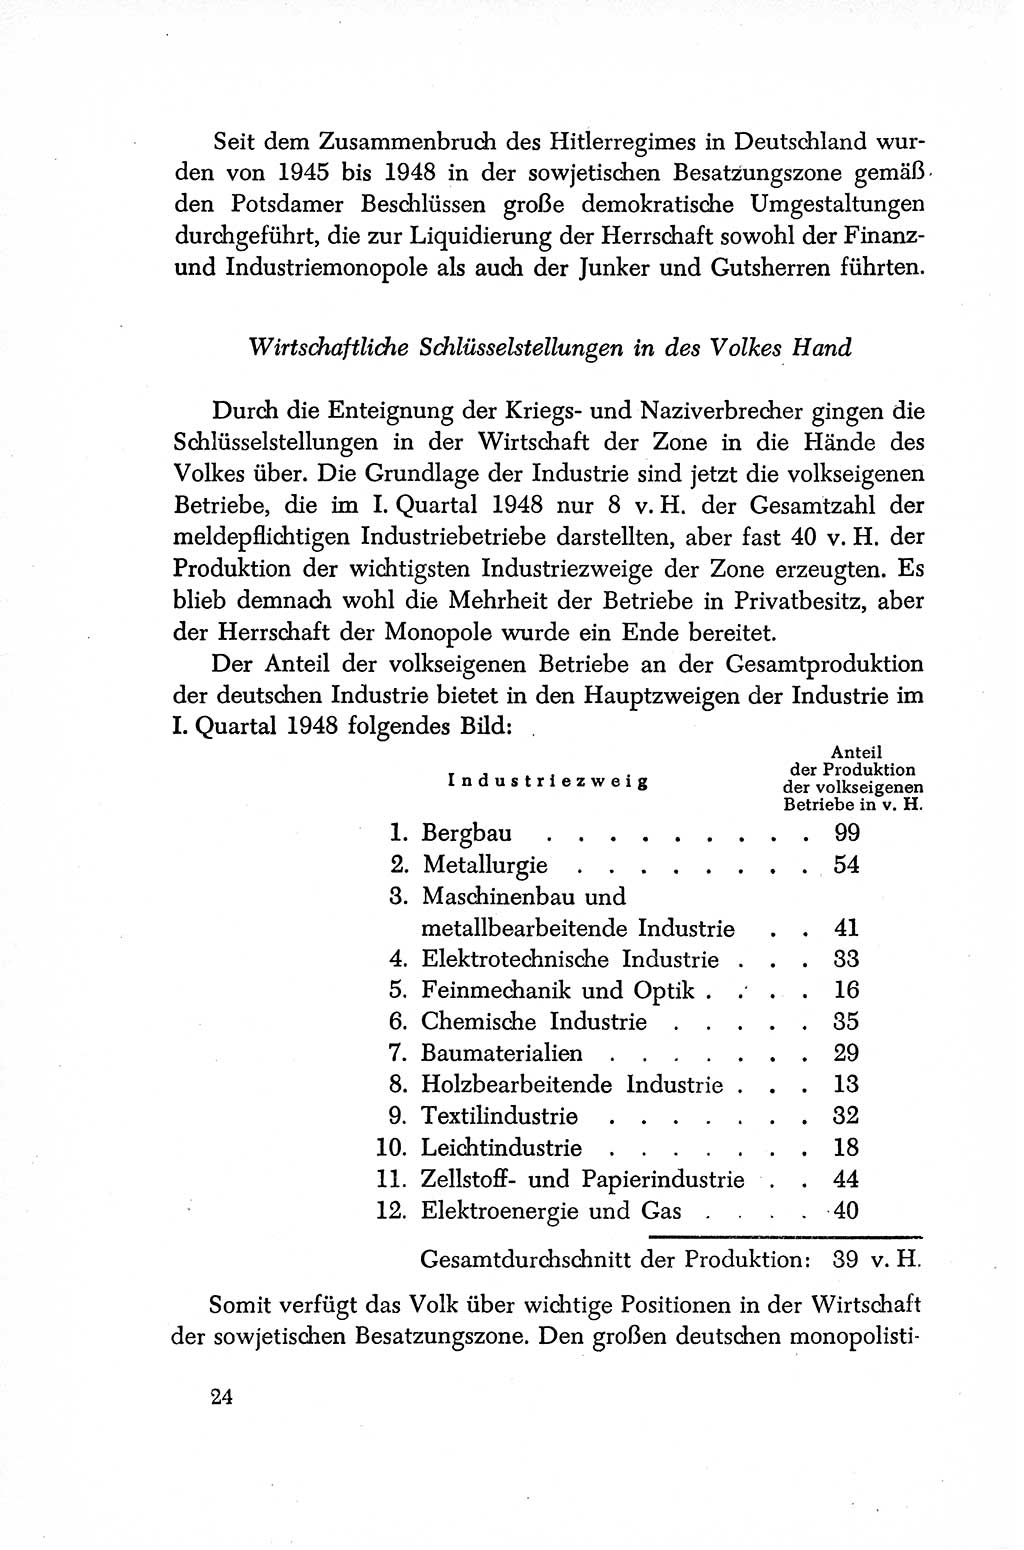 Dokumente der Sozialistischen Einheitspartei Deutschlands (SED) [Sowjetische Besatzungszone (SBZ) Deutschlands/Deutsche Demokratische Republik (DDR)] 1948-1950, Seite 24 (Dok. SED SBZ Dtl. DDR 1948-1950, S. 24)